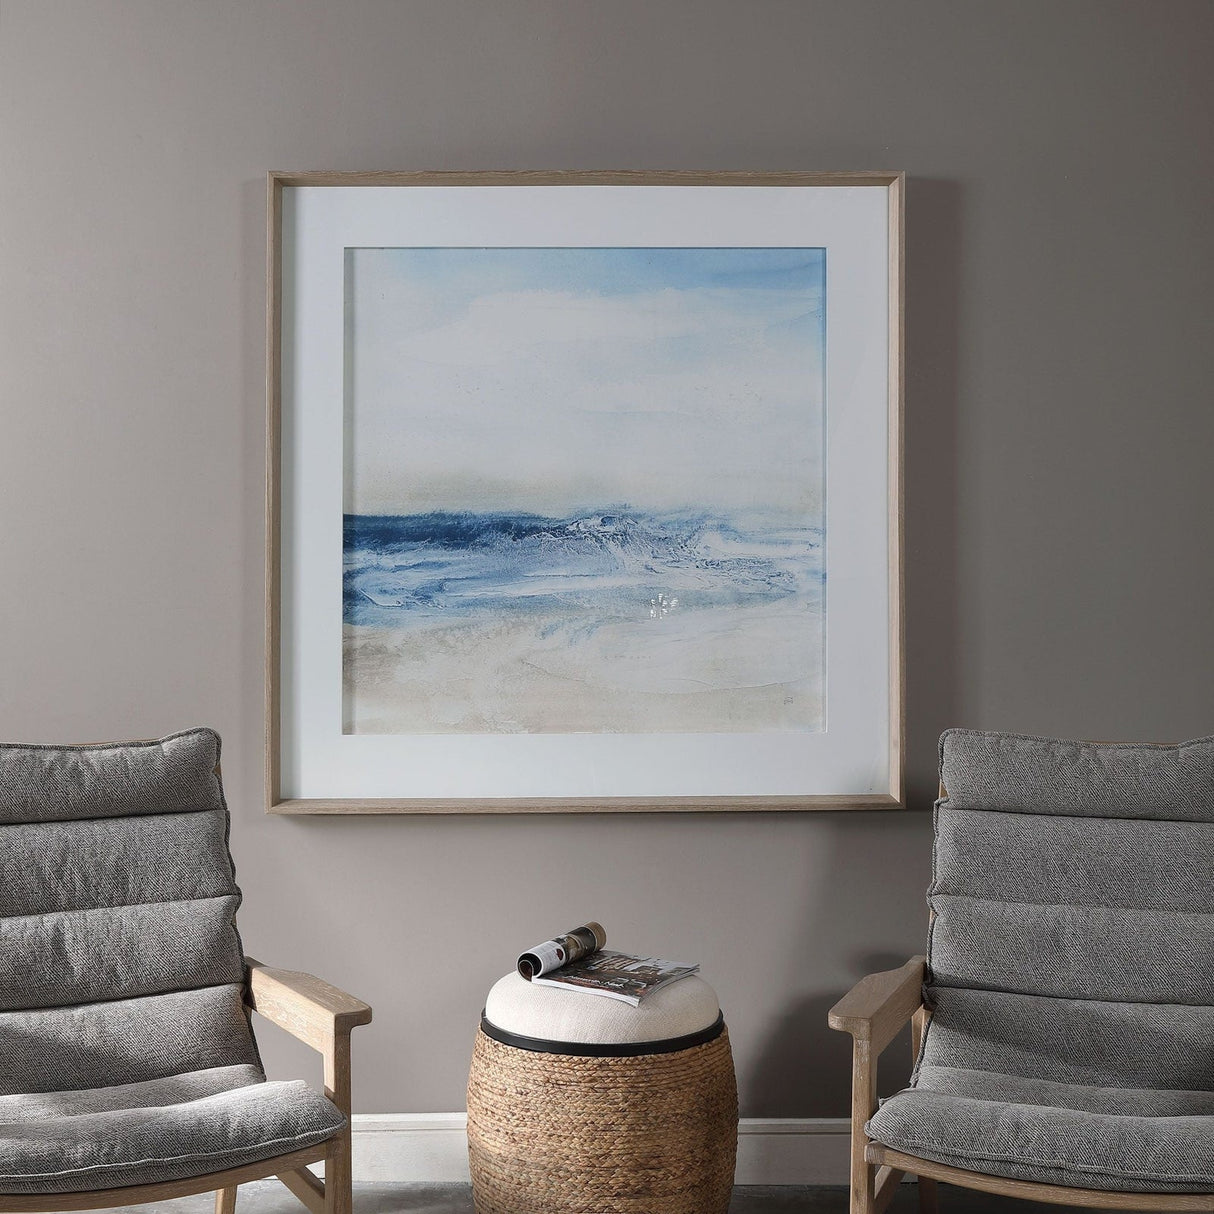 Uttermost Surf And Sand Framed Print - Home Elegance USA